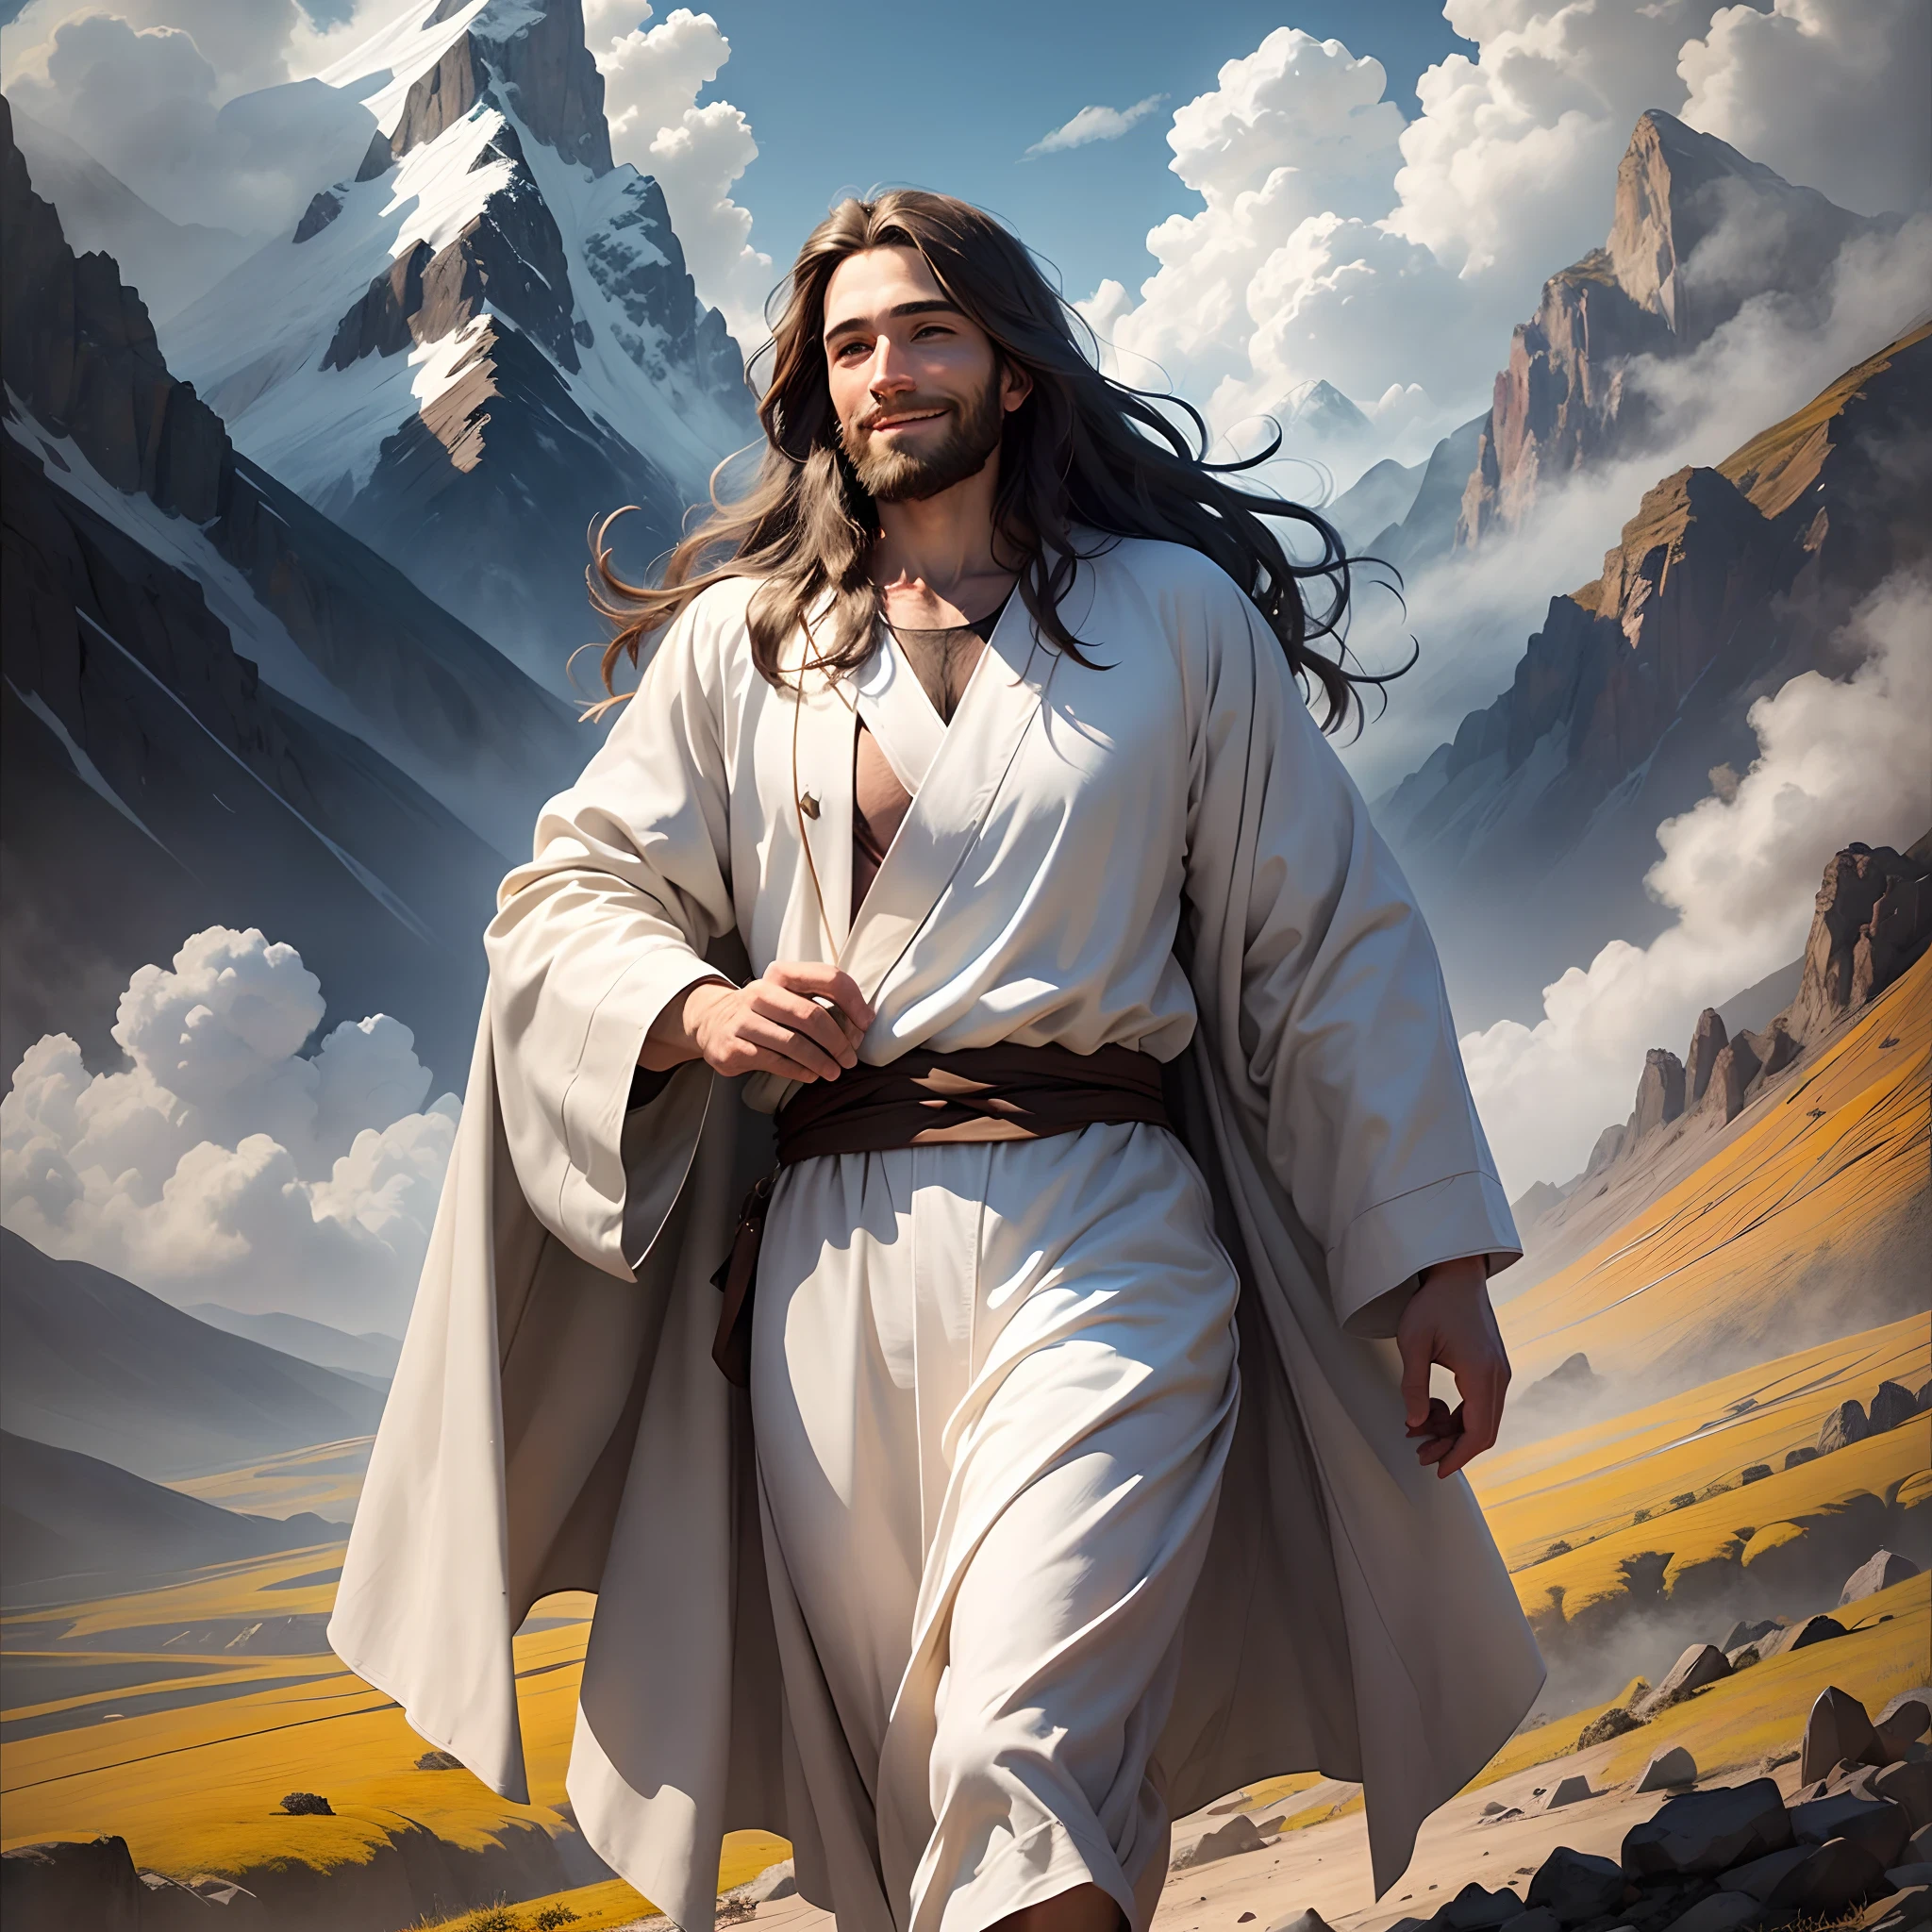 イエス,肖像画, やわらかい光, 長い茶色の髪とひげを生やした男性, 白いローブと青い帯を身に着けている, 山の中を歩く, 優しく微笑む, 背景には山と雲, 8K, 油絵